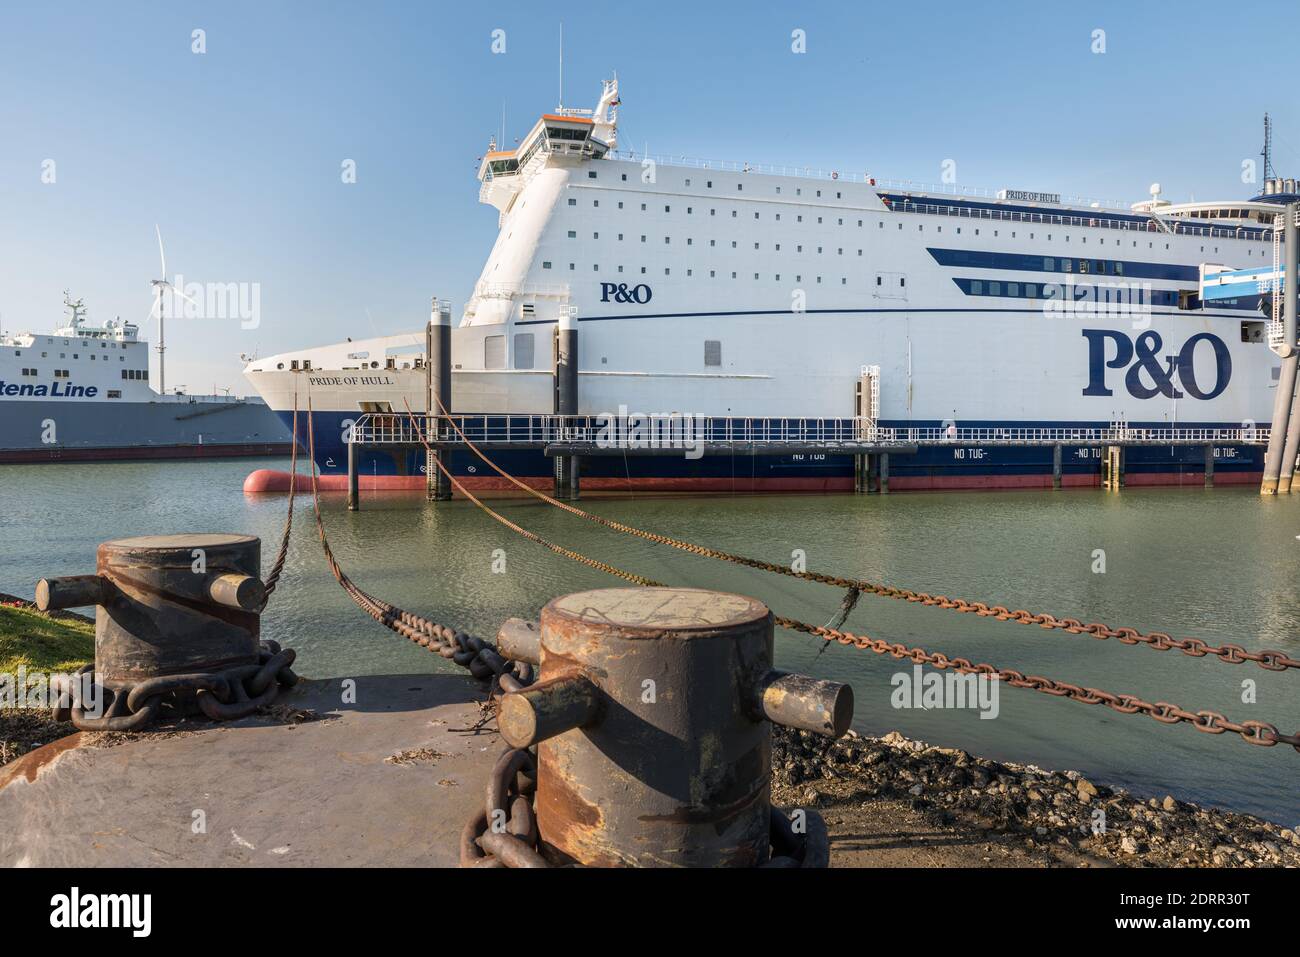 ROTTERDAM EUROPOORT, NIEDERLANDE - 29. FEBRUAR 2016: Die Fähre Pride of Hull  wird am Kai von P&O North Sea Ferries in Rotterdam Europoo angekettet  Stockfotografie - Alamy